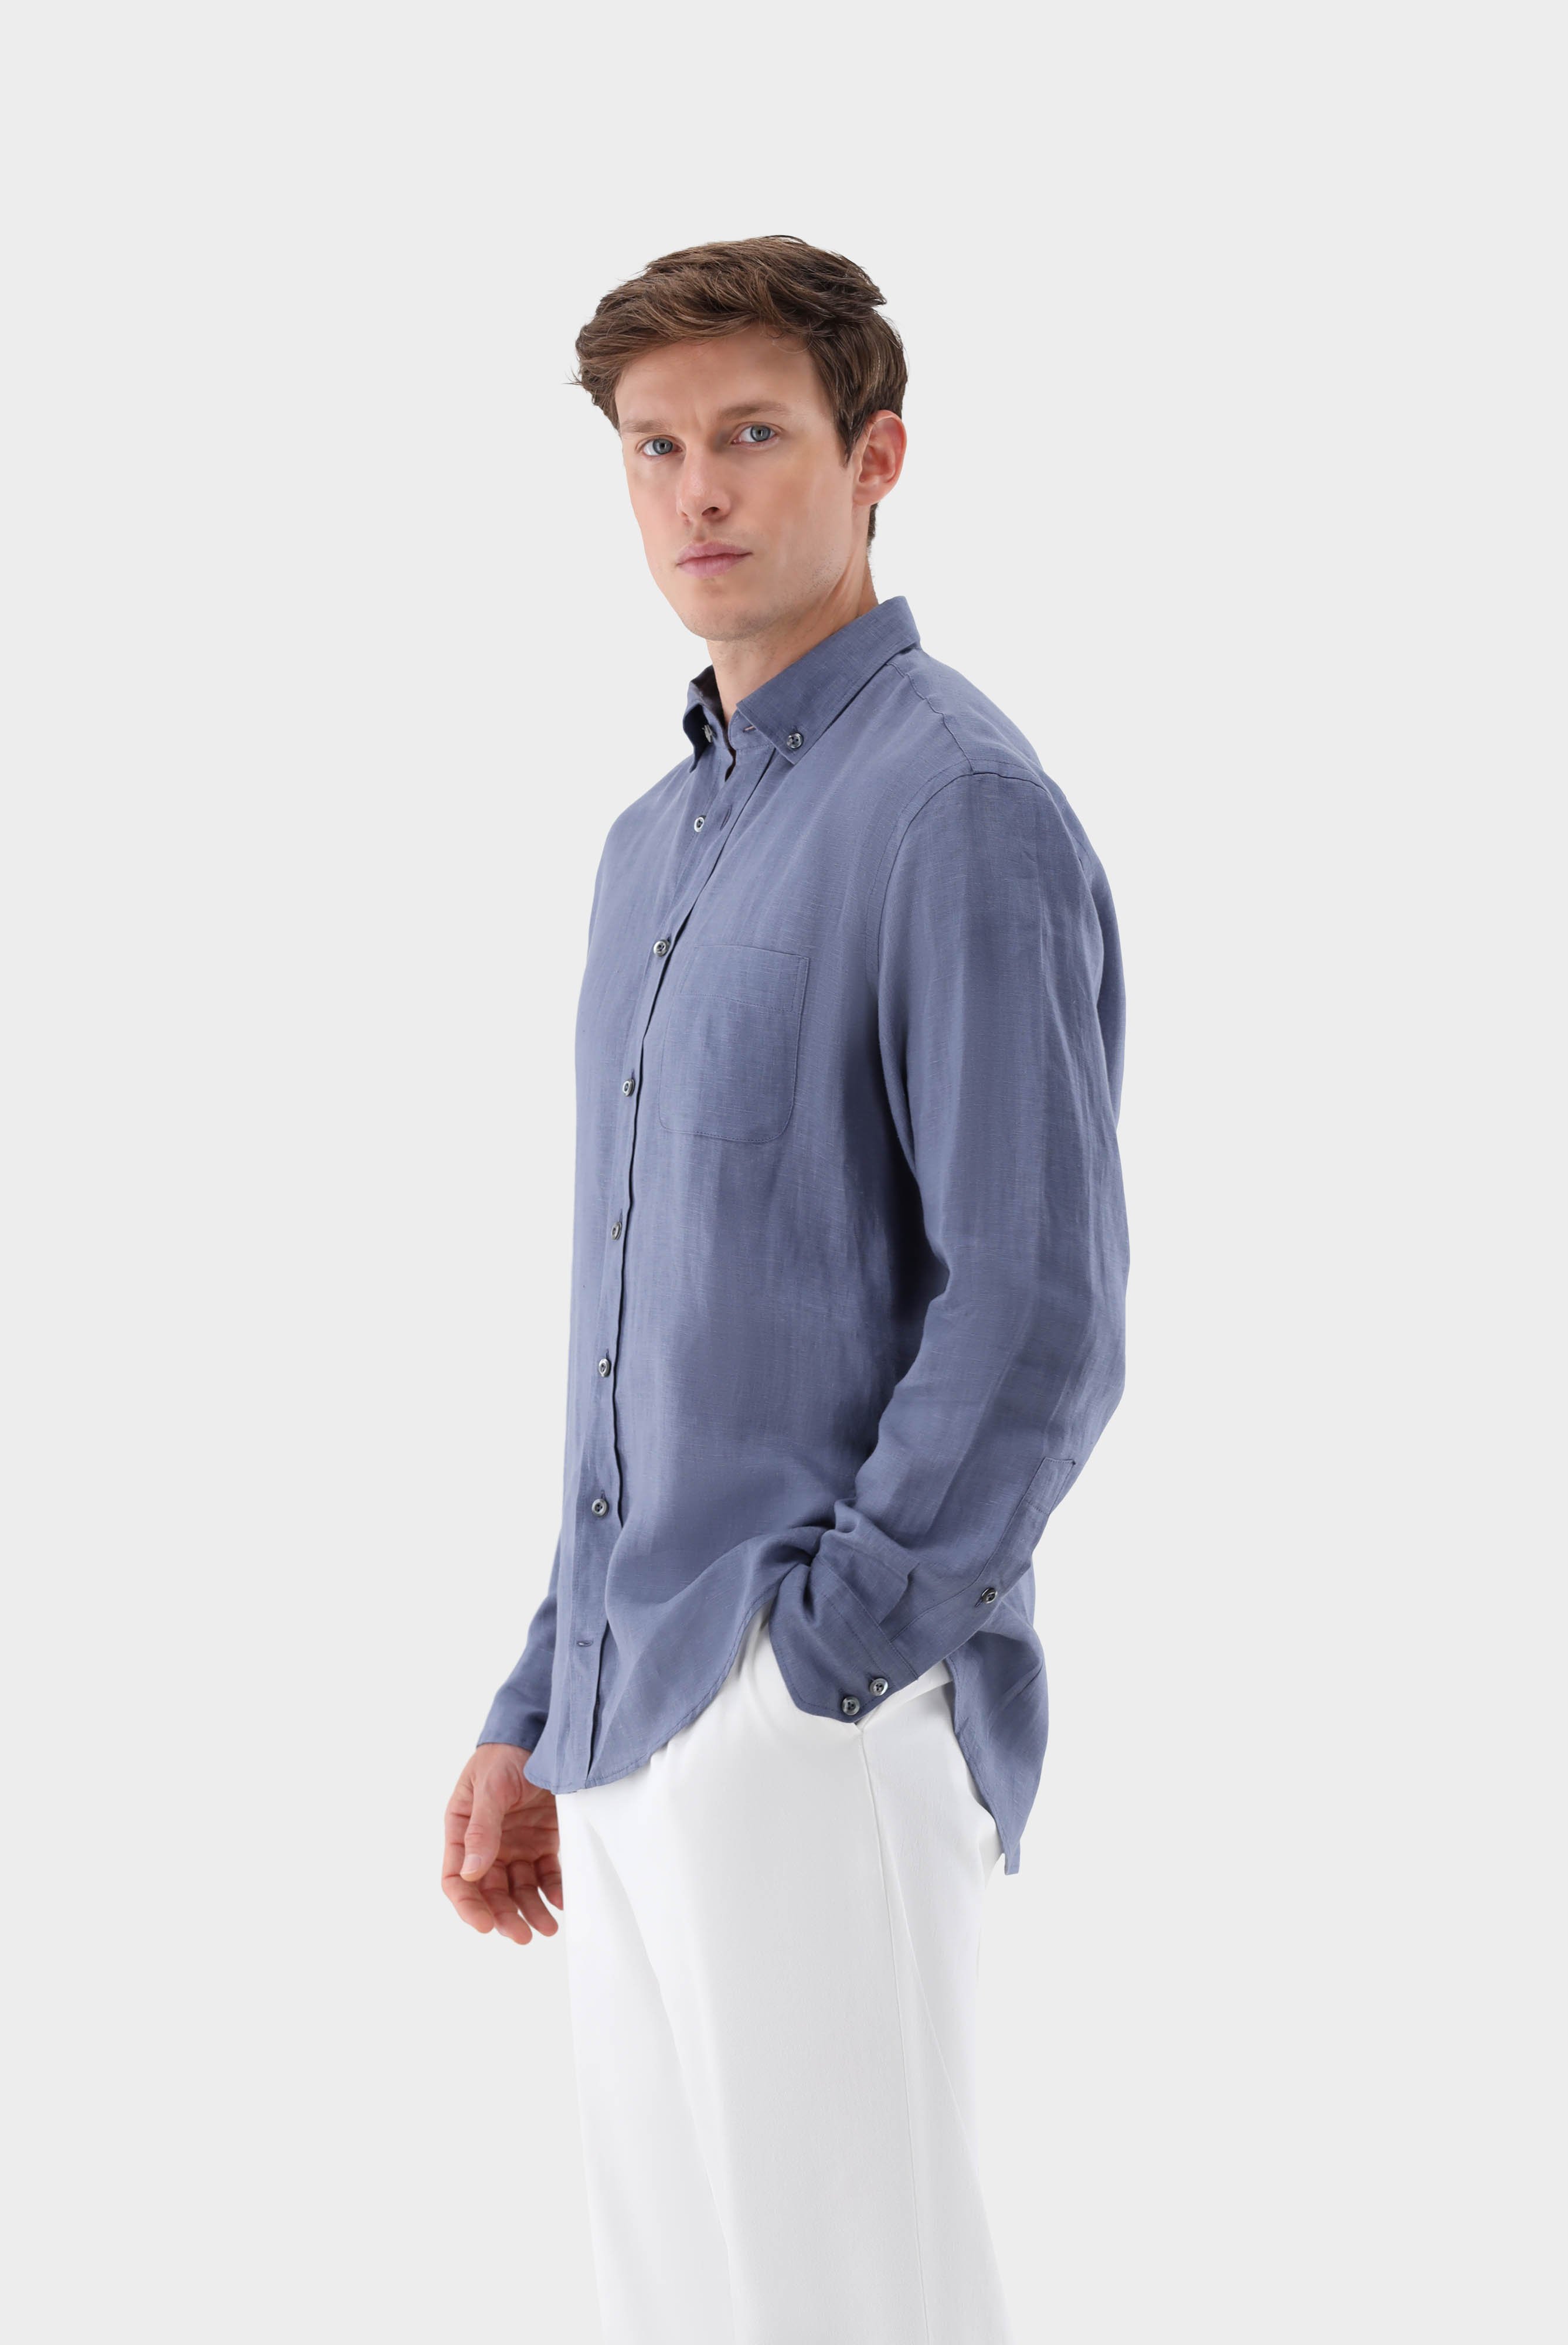 Casual Hemden+Leinenhemd mit Button-Down Kragen Tailor Fit+20.2013.9V.150555.680.41